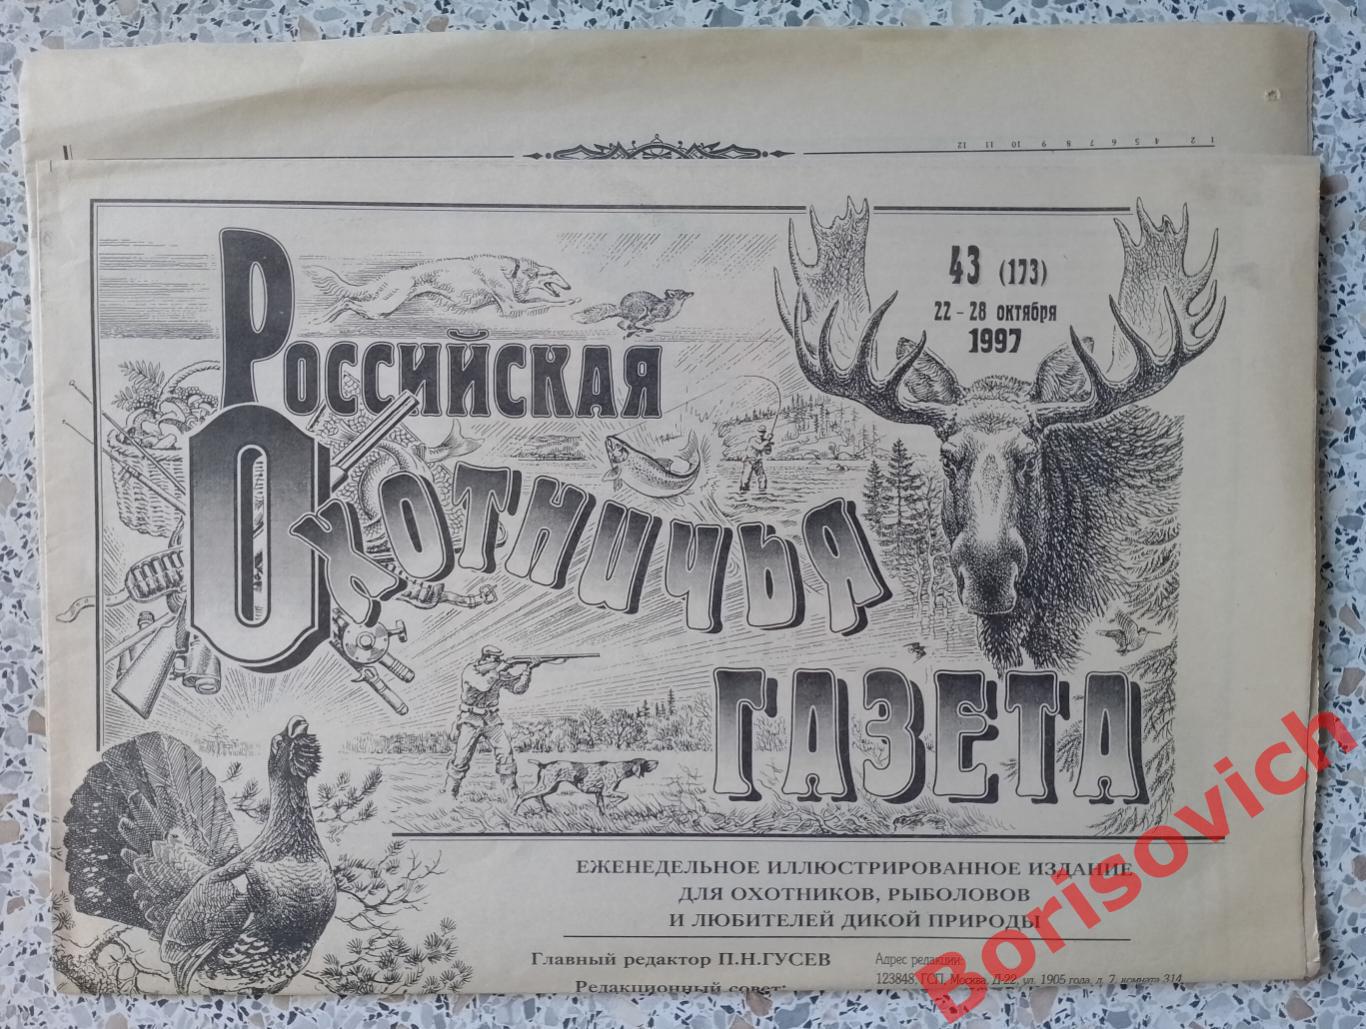 Российская Охотничья газета N 43. 1997